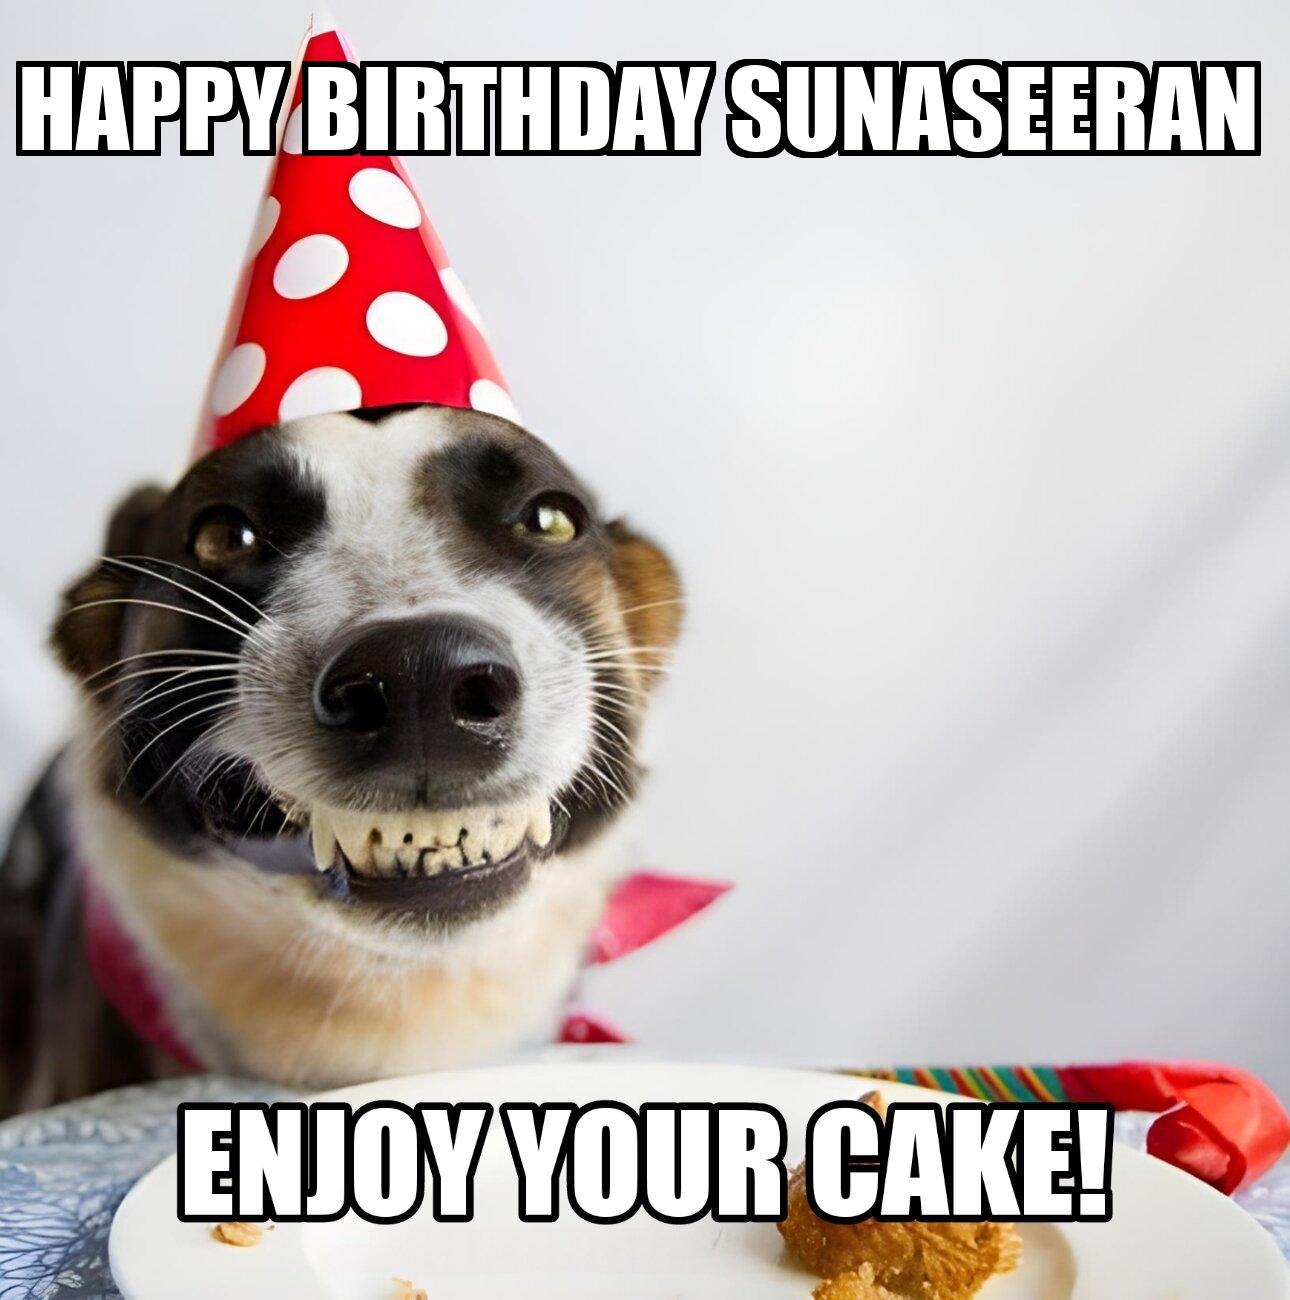 Happy Birthday Sunaseeran Enjoy Your Cake Dog Meme